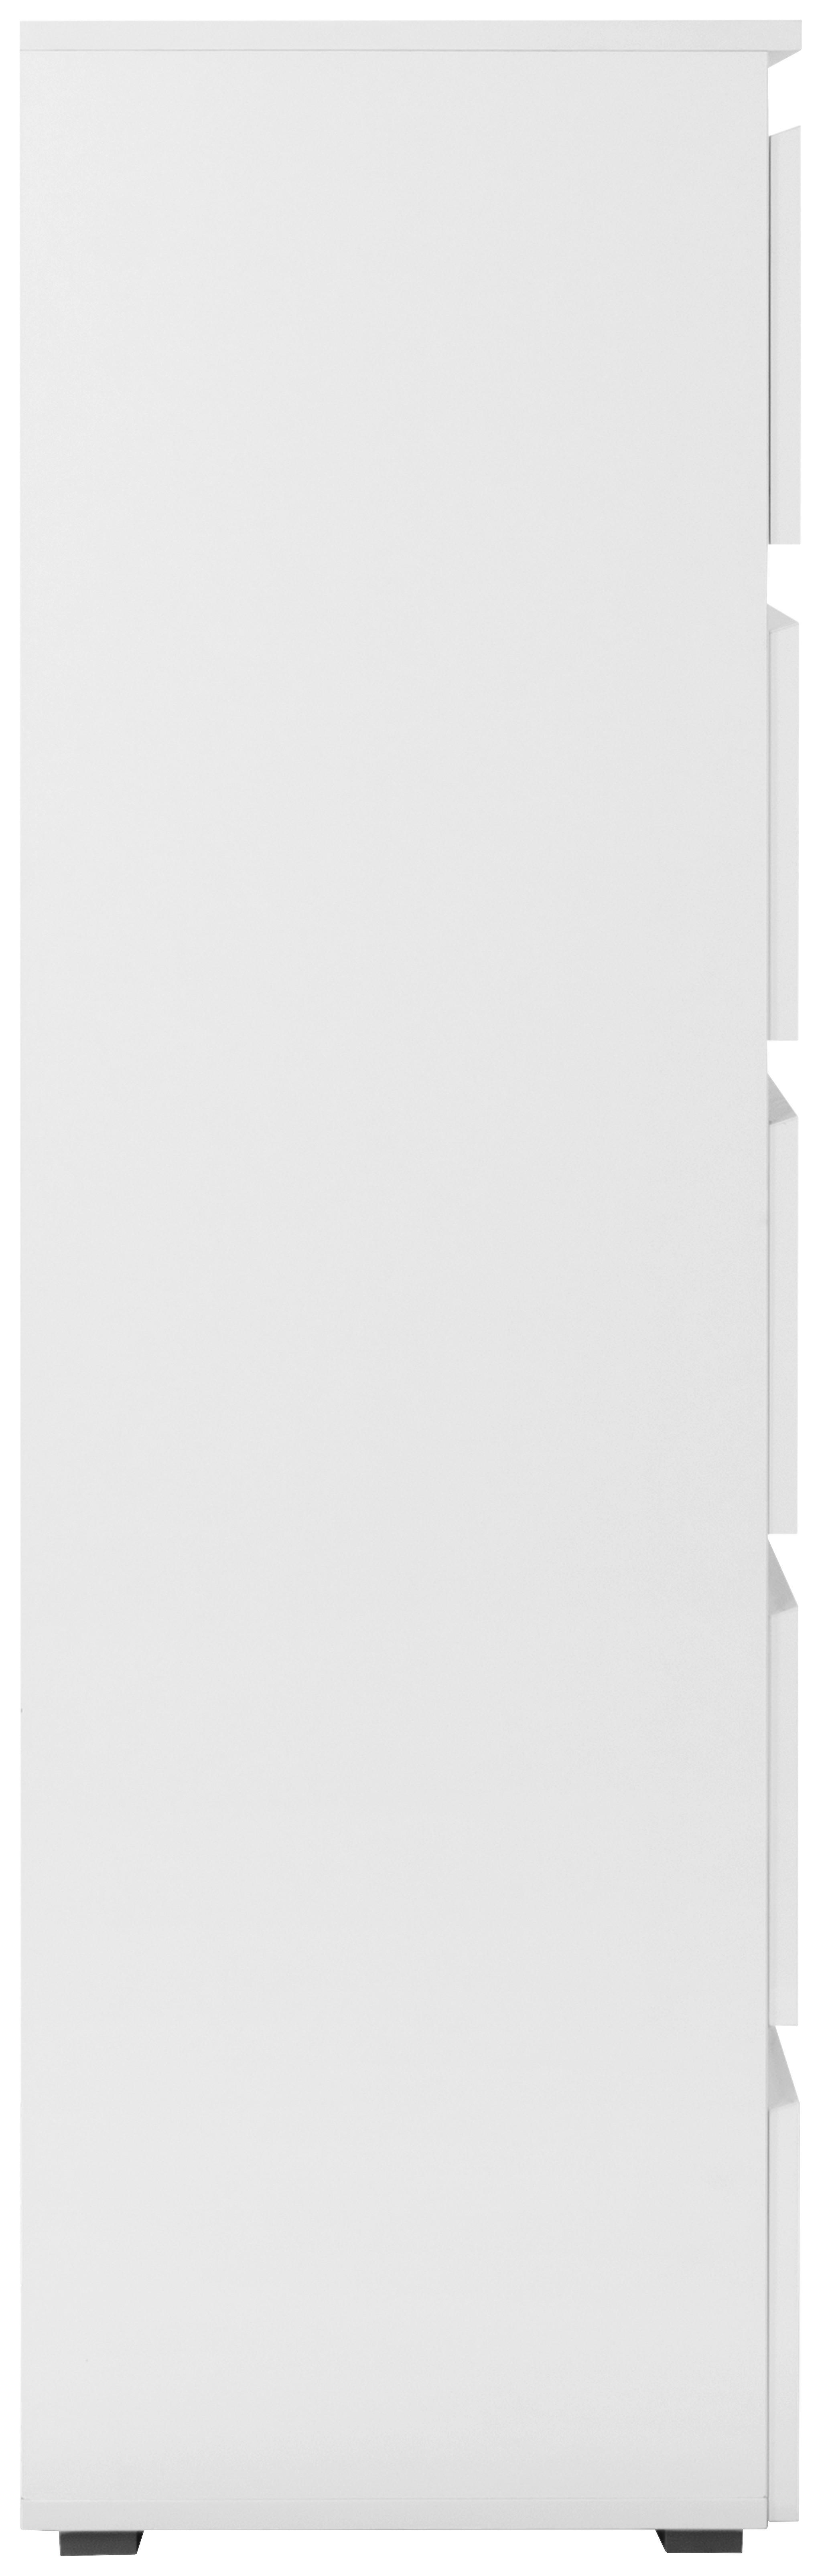 Schubkastenkommode Capetown weiß glänzend weiß B/H/T: ca. 80x132x40 cm Capetown - weiß (80,00/132,00/40,00cm)